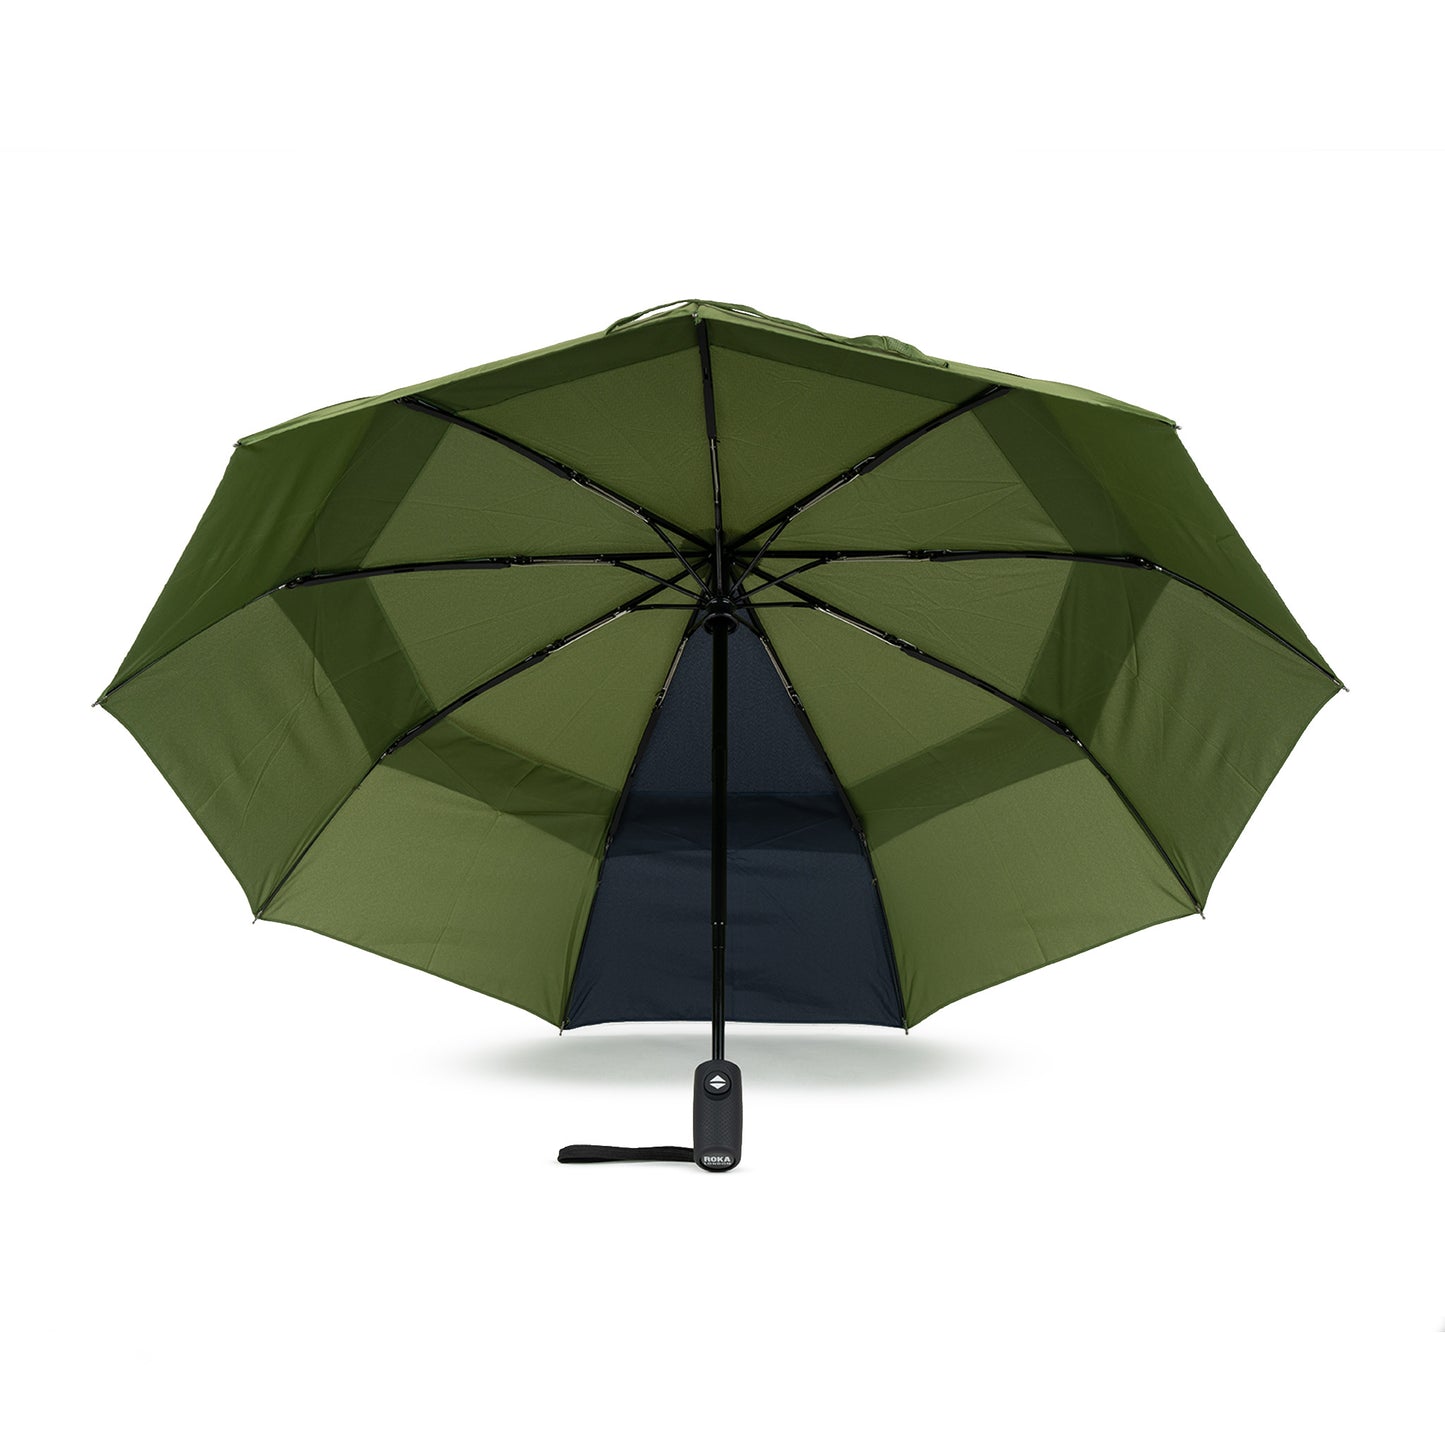 Roka London Waterloo Sustainable Umbrella, Avocado & Midnight